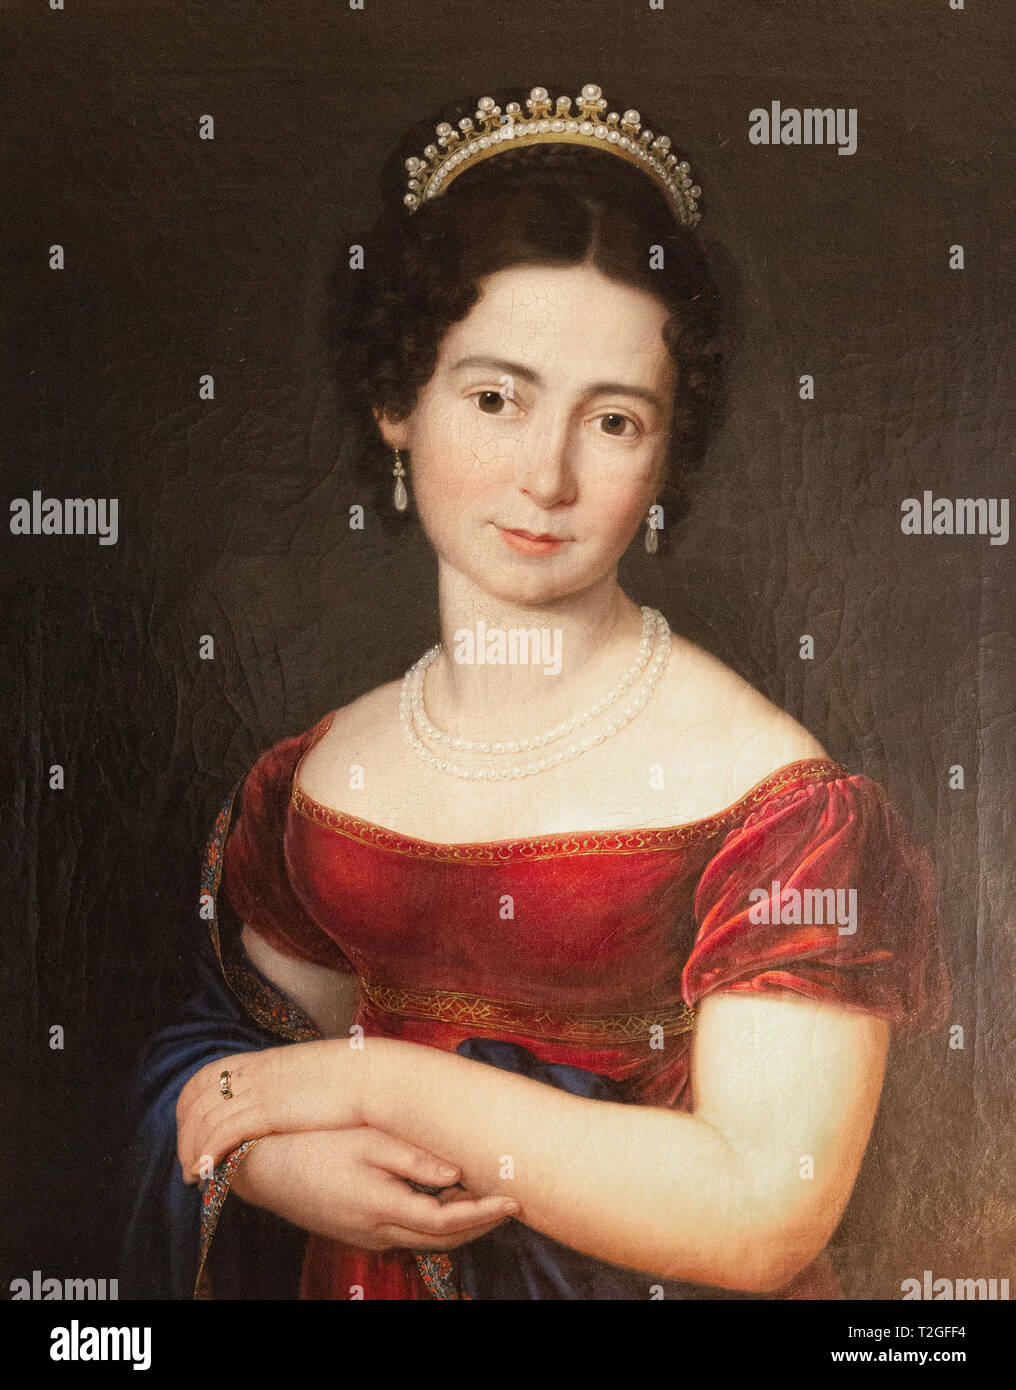 Peinture de Victoria de Saxe-Cobourg-Saalfeld, mère de la reine Victoria ; dans le Musée du cristal et verre, Malaga, Espagne Banque D'Images